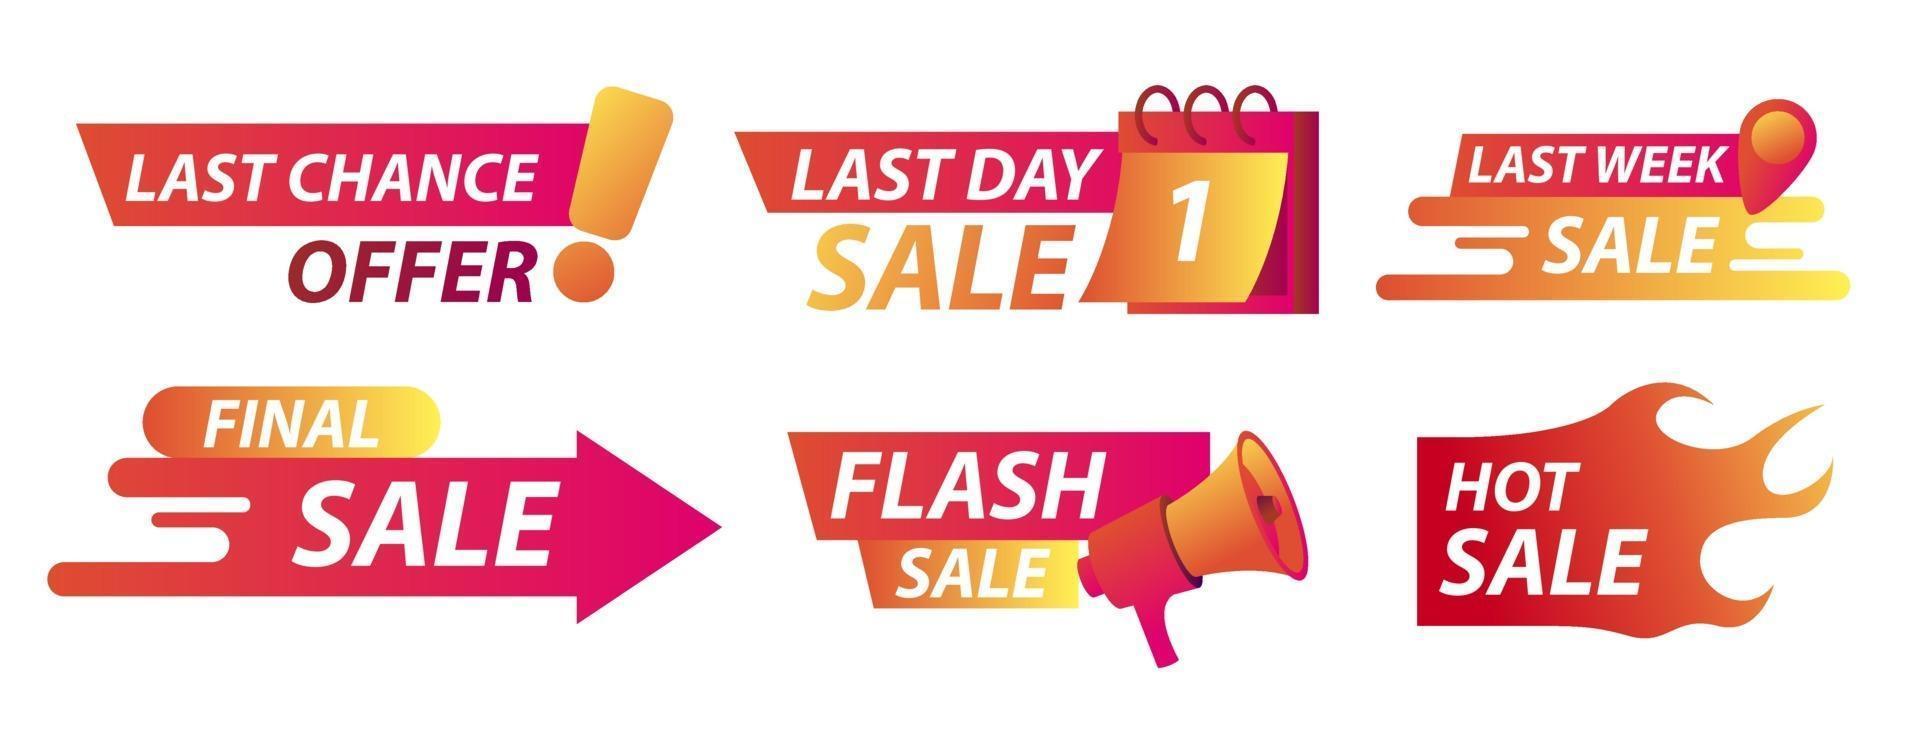 Verkaufs-Countdown-Abzeichen. Last Chance Angebot Banner, Last Day Sales mit Kalender und Hot Sale in Fire. Vektorillustration vektor